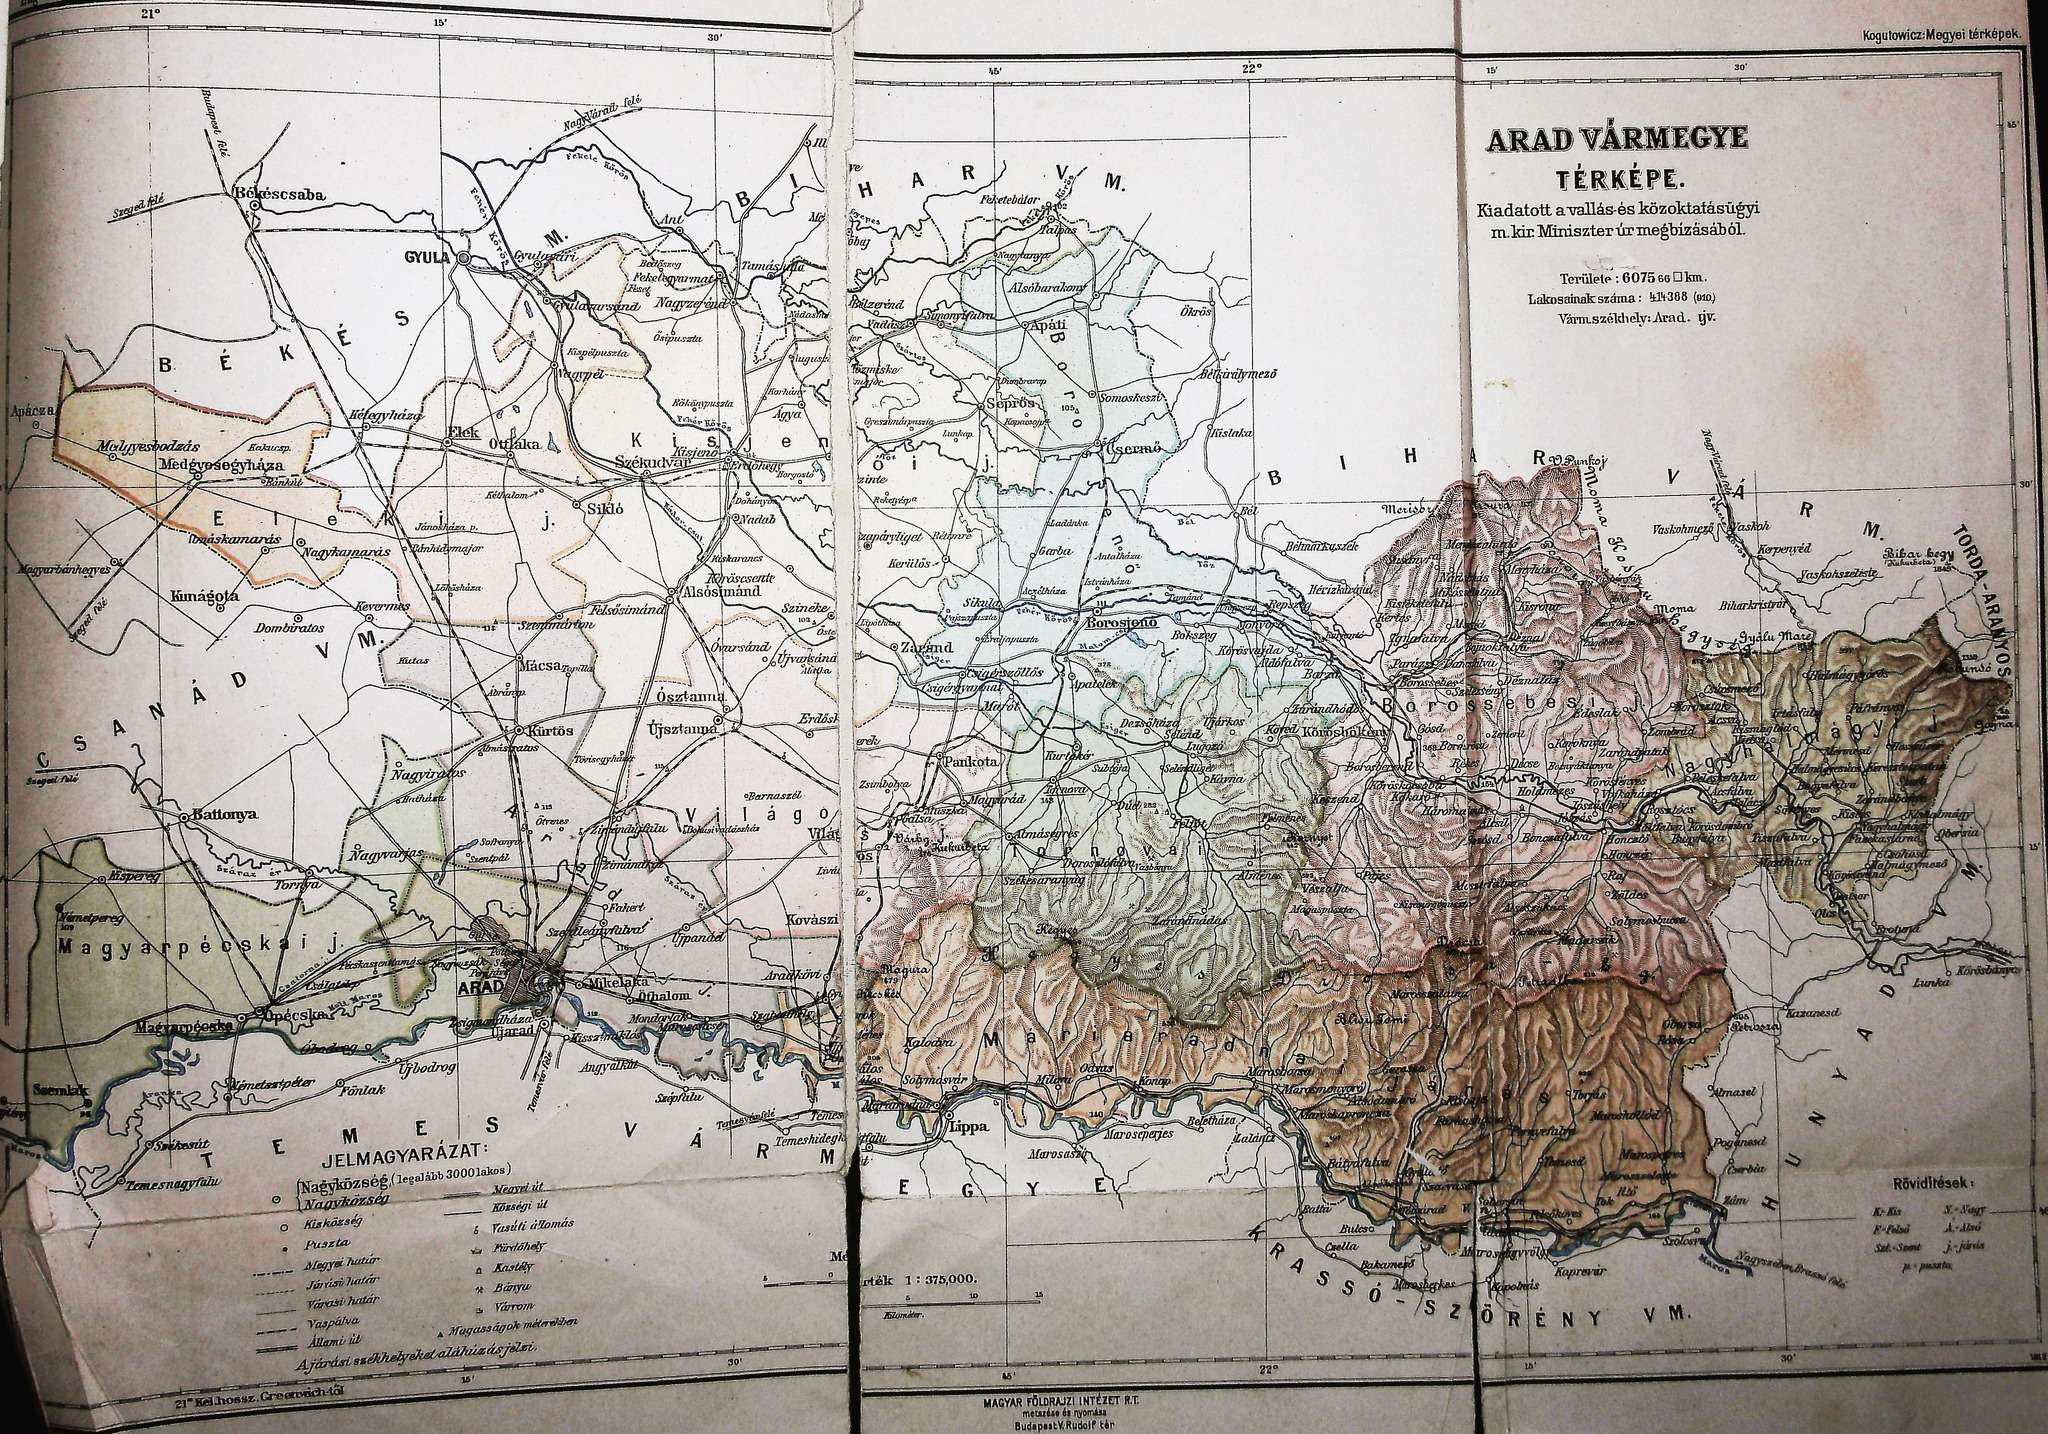 Harta judetului Arad in anul 1910 607566 kmp populatie 414.388 locuitori